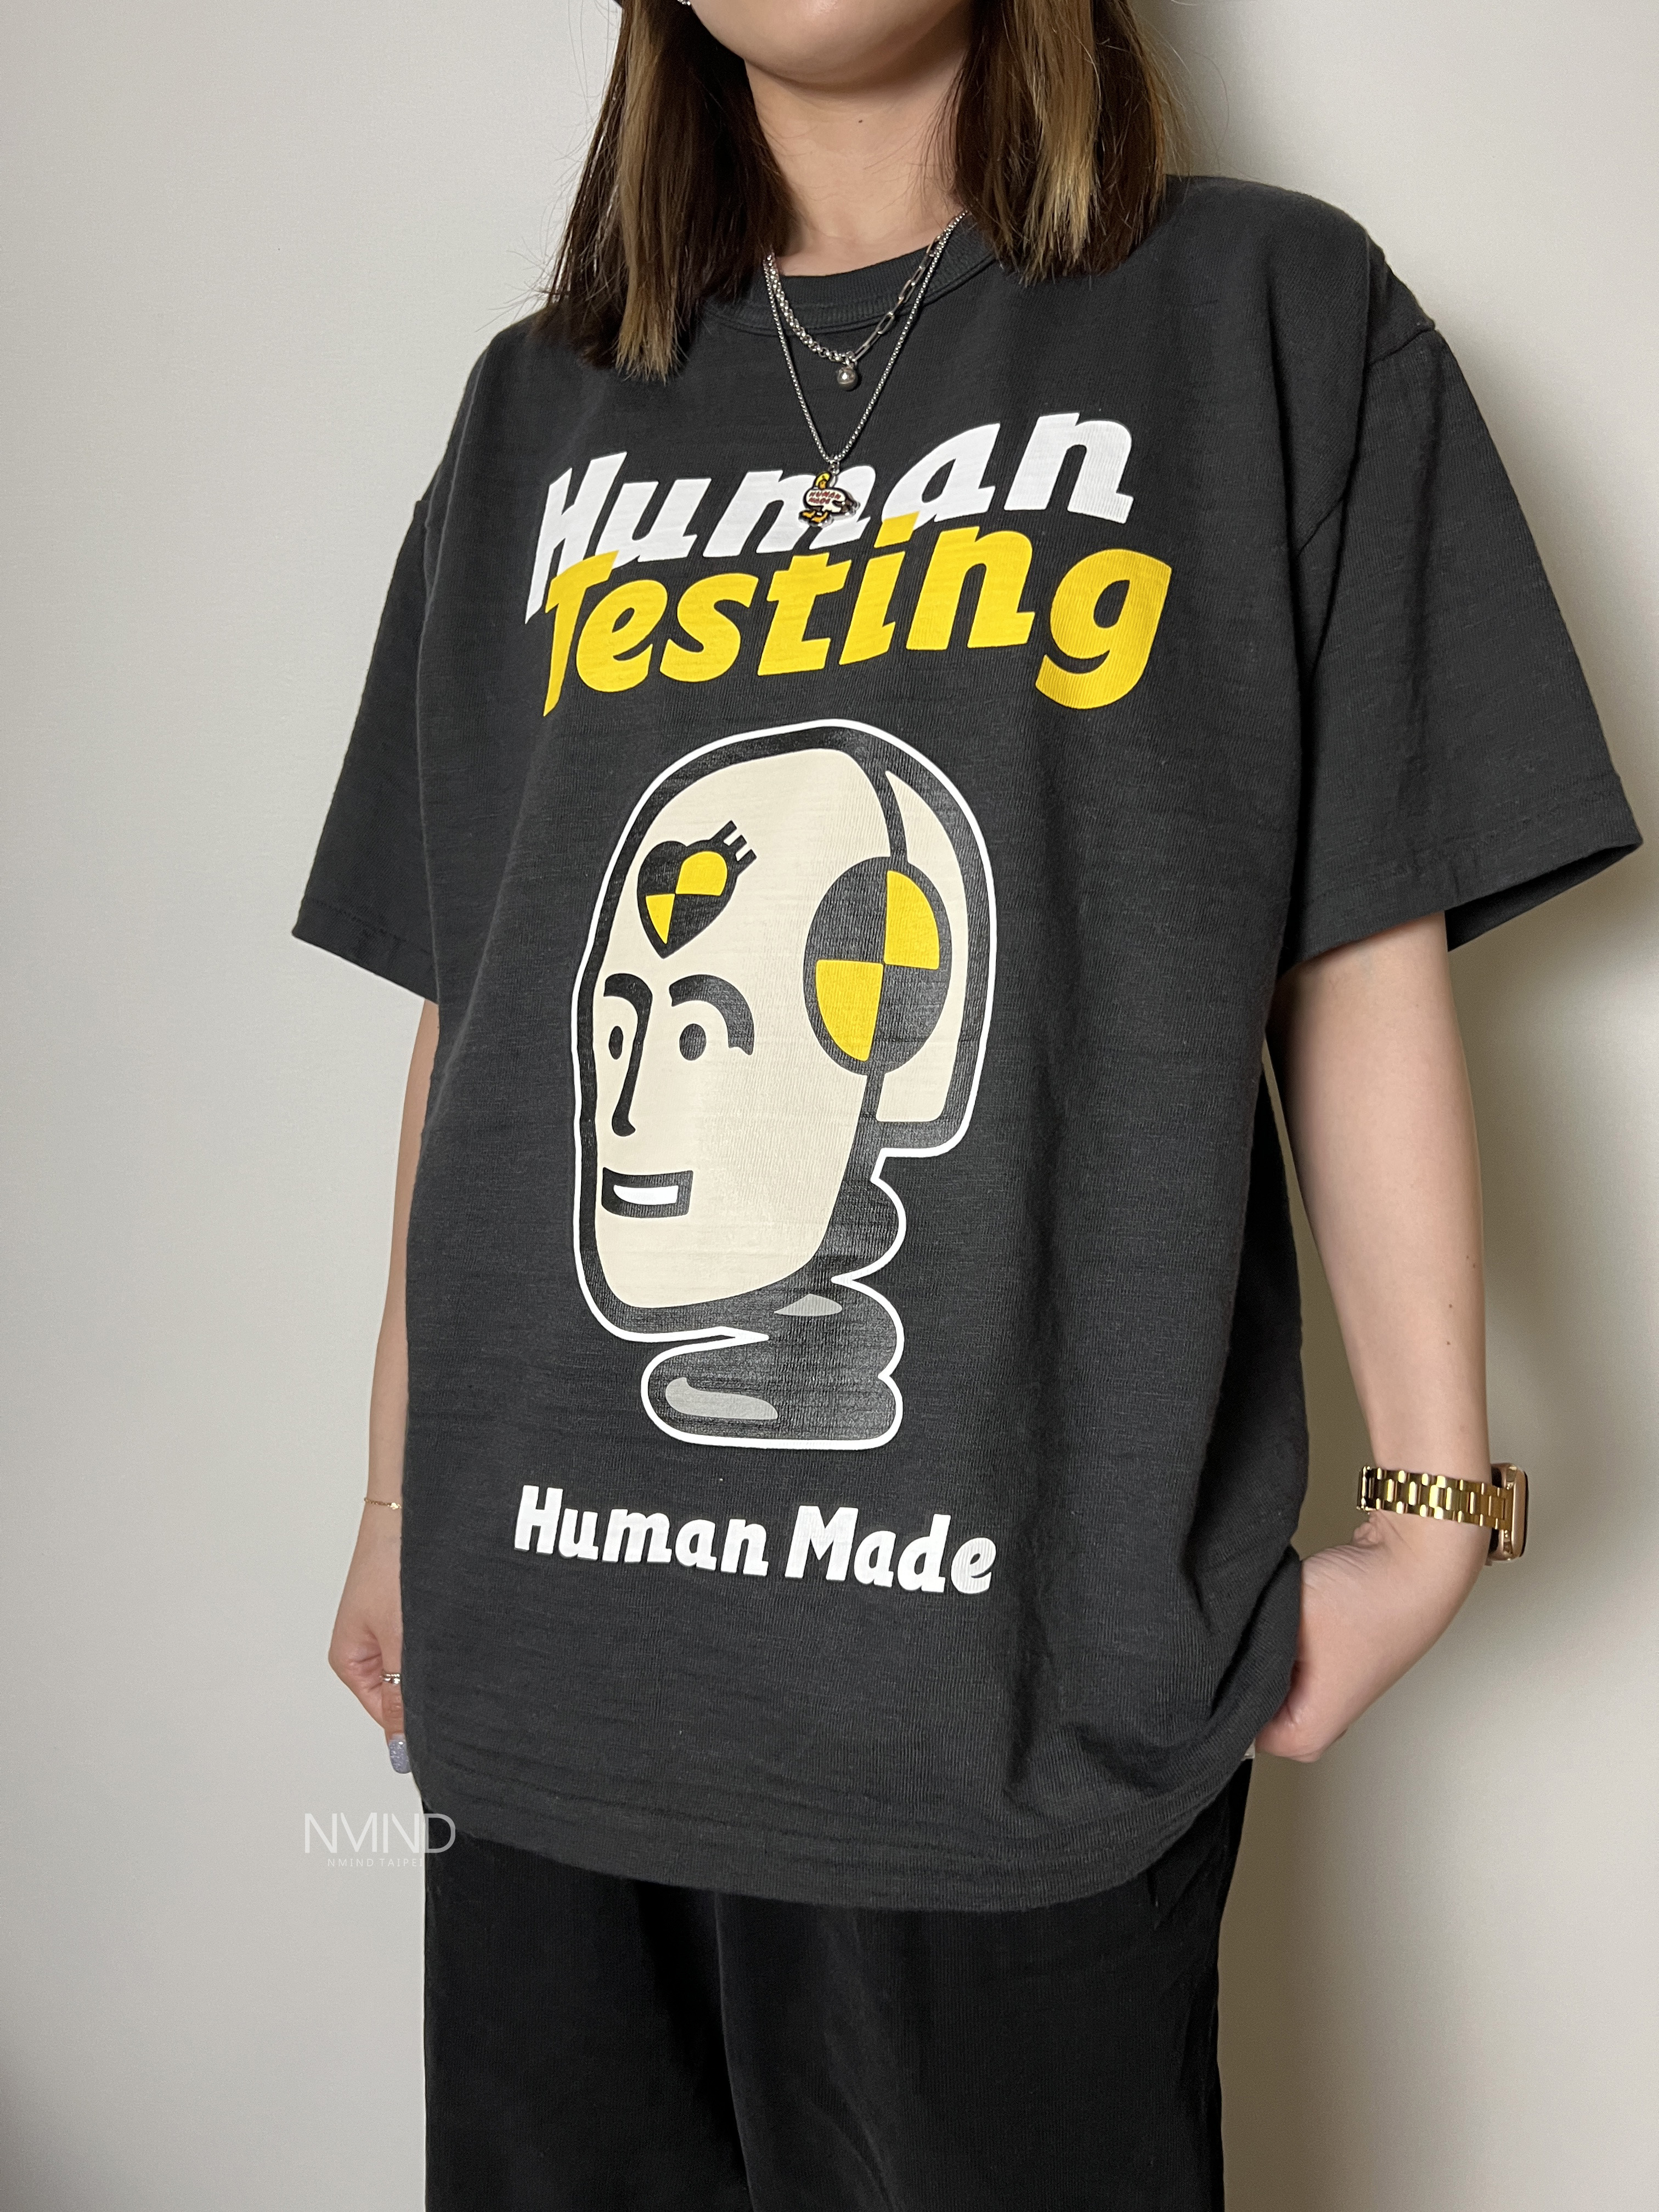 台北店限量專區㊙ HUMAN MADEx A$AP Rocky HUMAN TESTING TEE (白/黑)